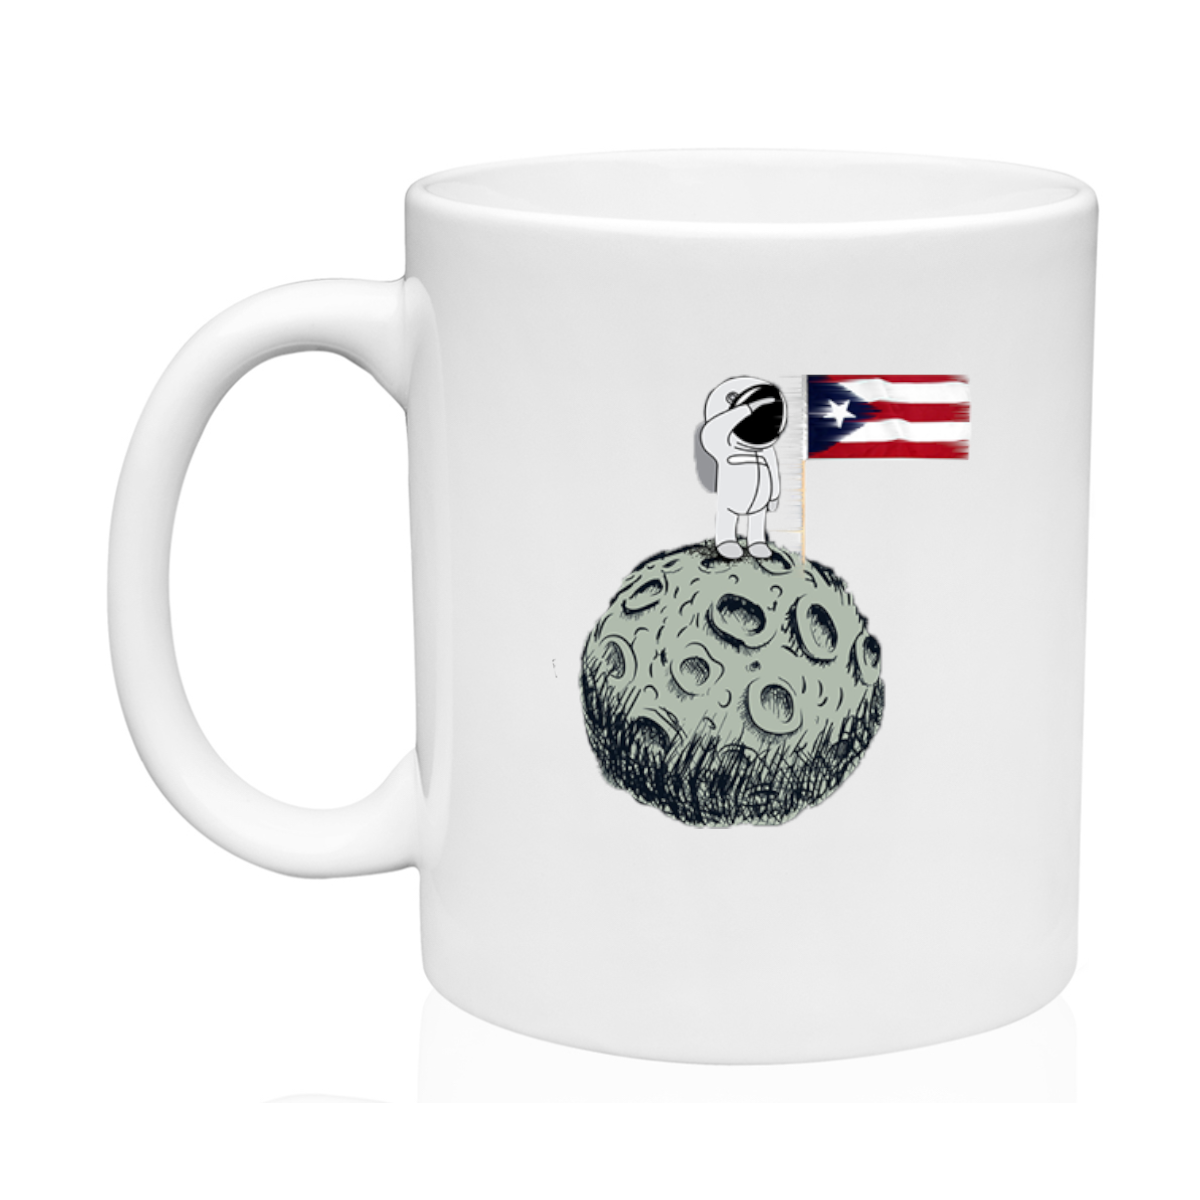 AGAD Puerto Rico (Boricua en la Luna Ceramic Mug)